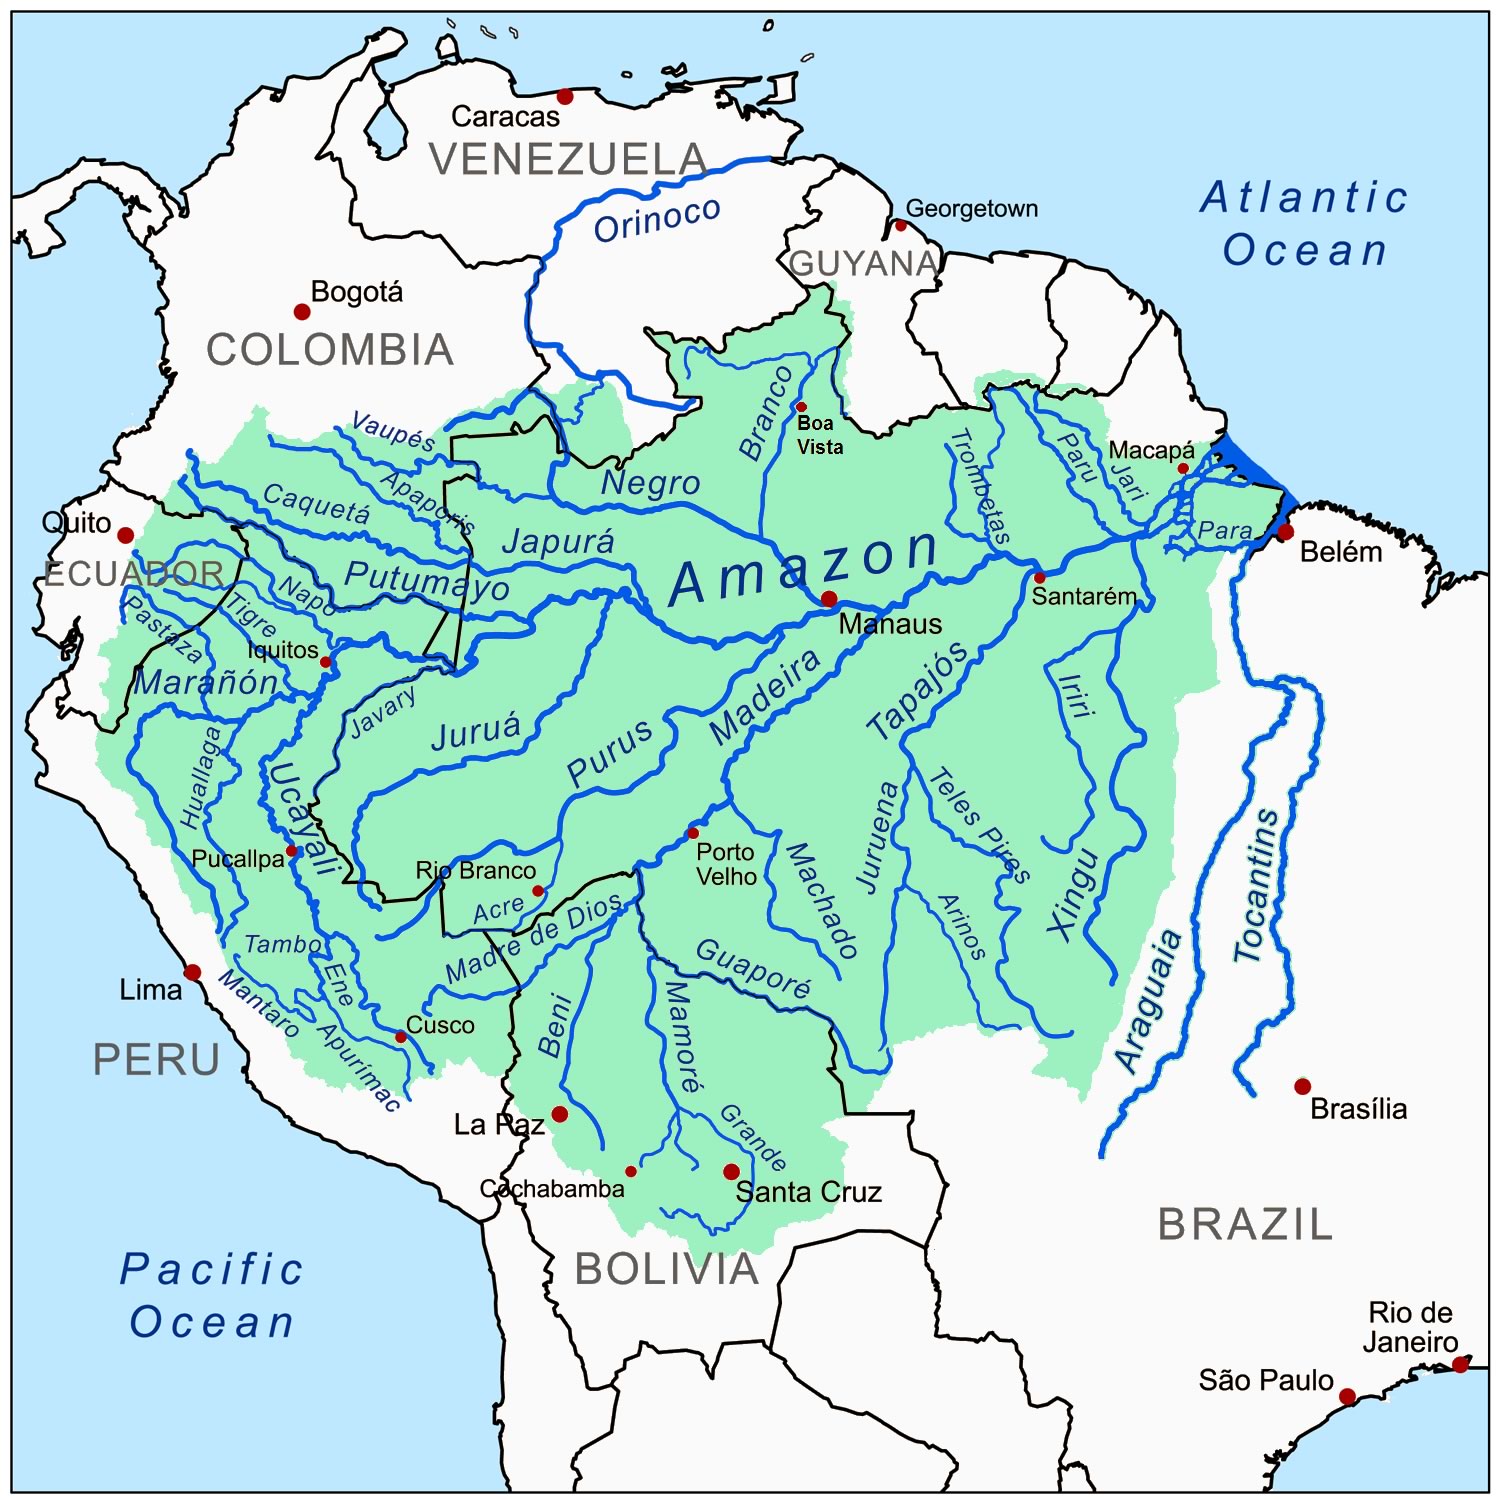 (Amazon River)